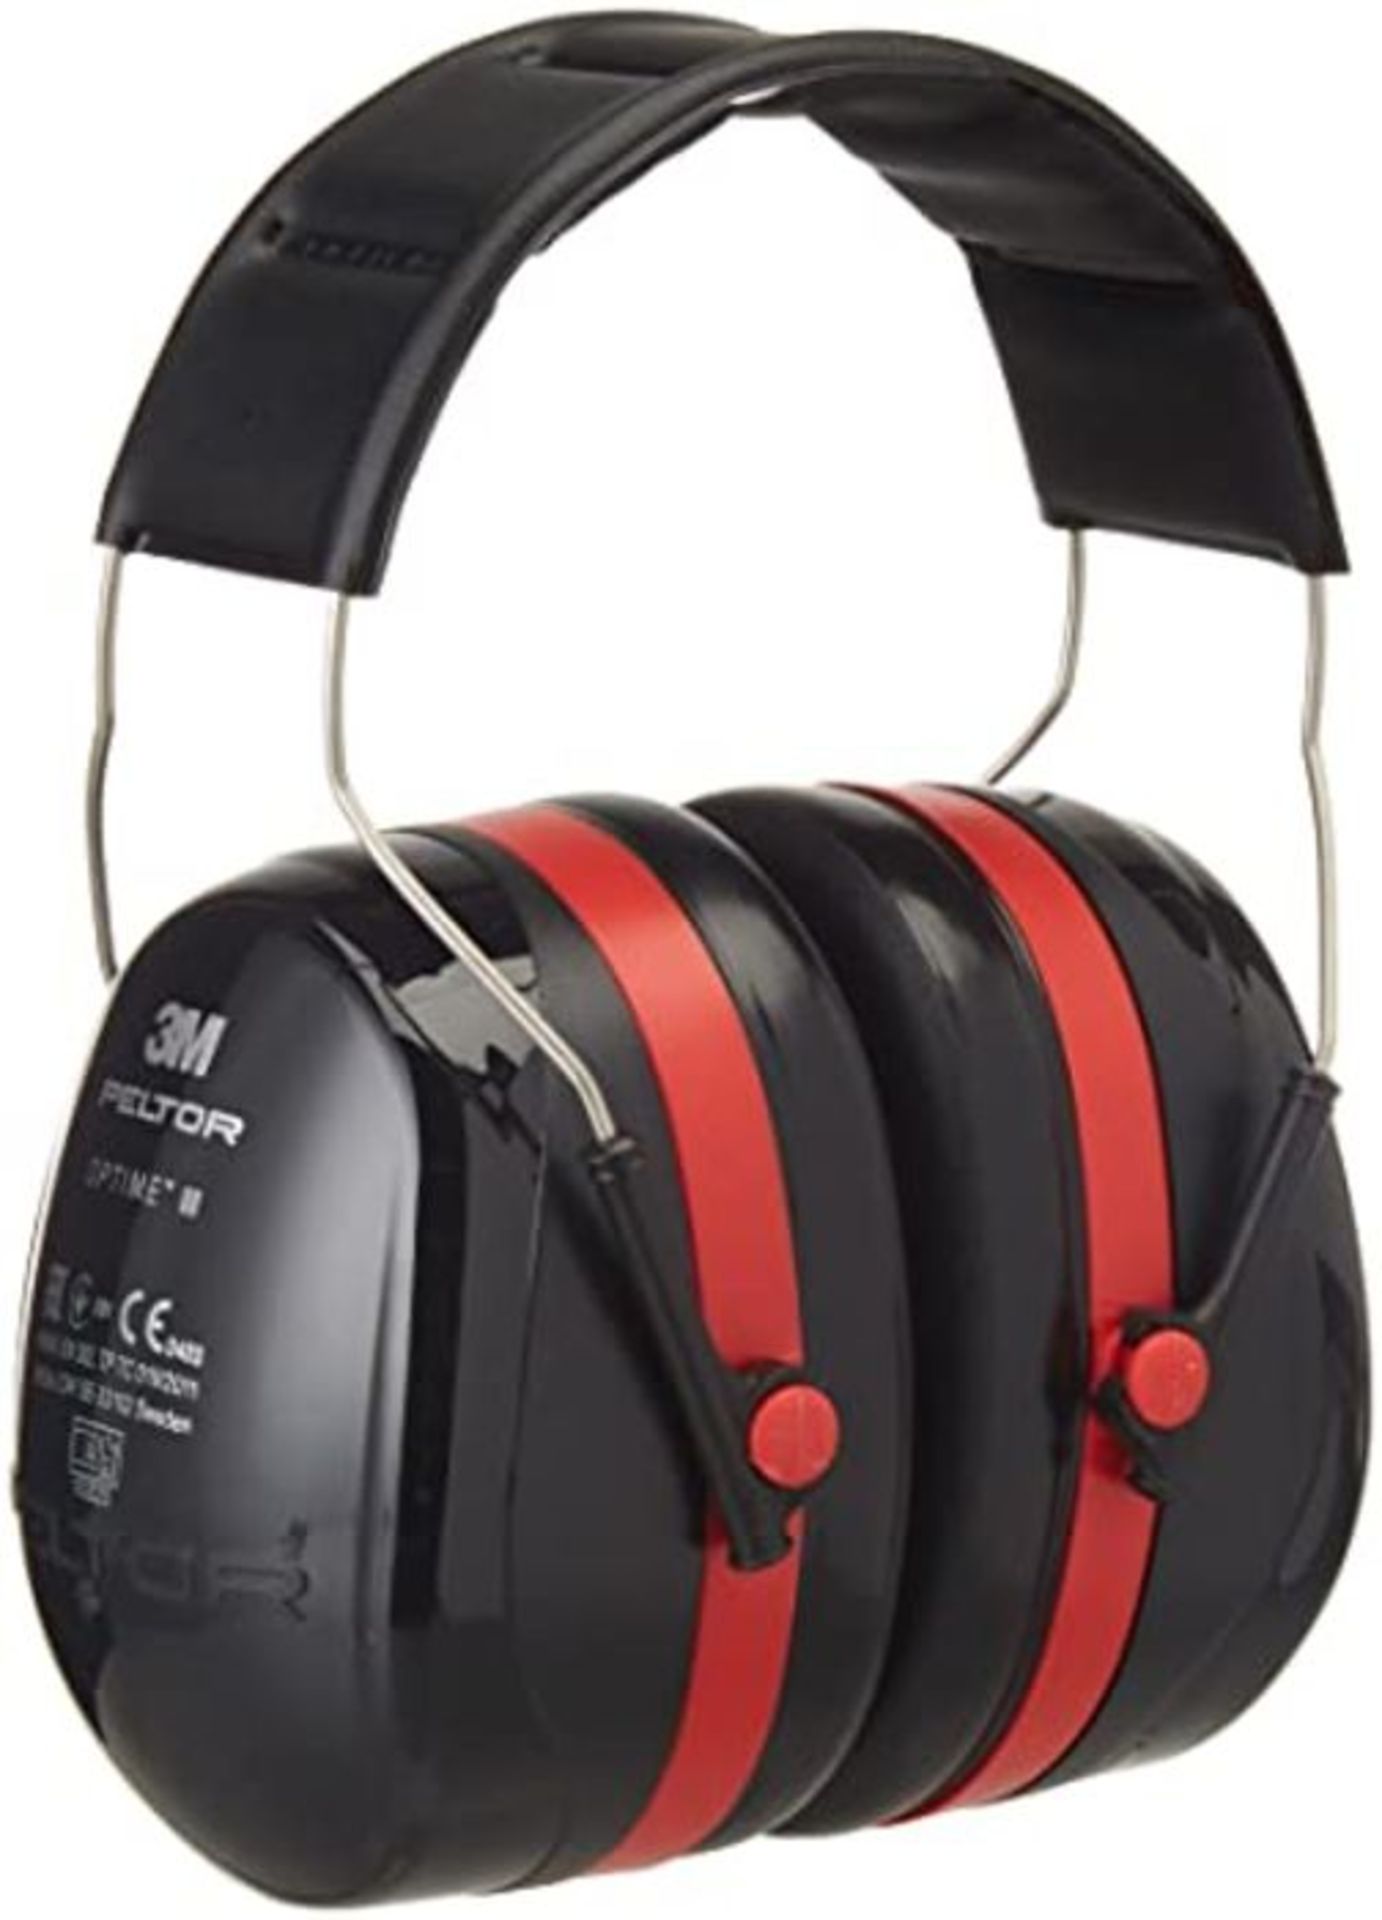 3�M� �P�e�l�t�o�r� �O�p�t�i�m�e� �I�I�I� �E�a�r�m�u�f�f�s� �w�i�t�h� �H�e�a�d�b�a�n�d�,� �3�5� �d�B�